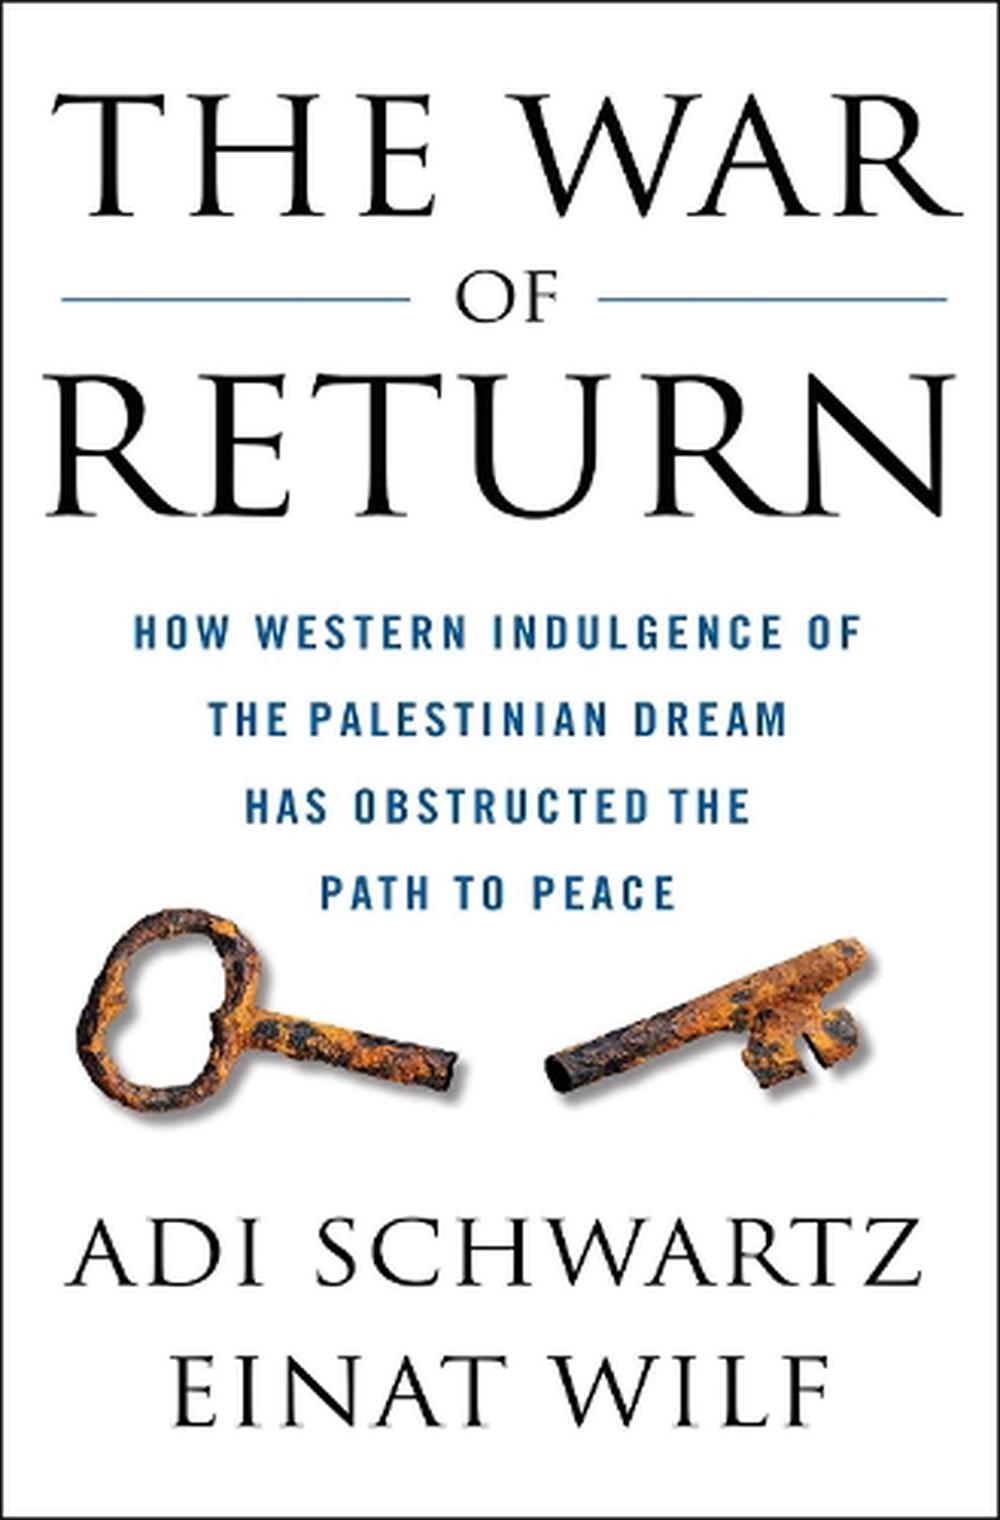 The War of Return by Adi Schwartz